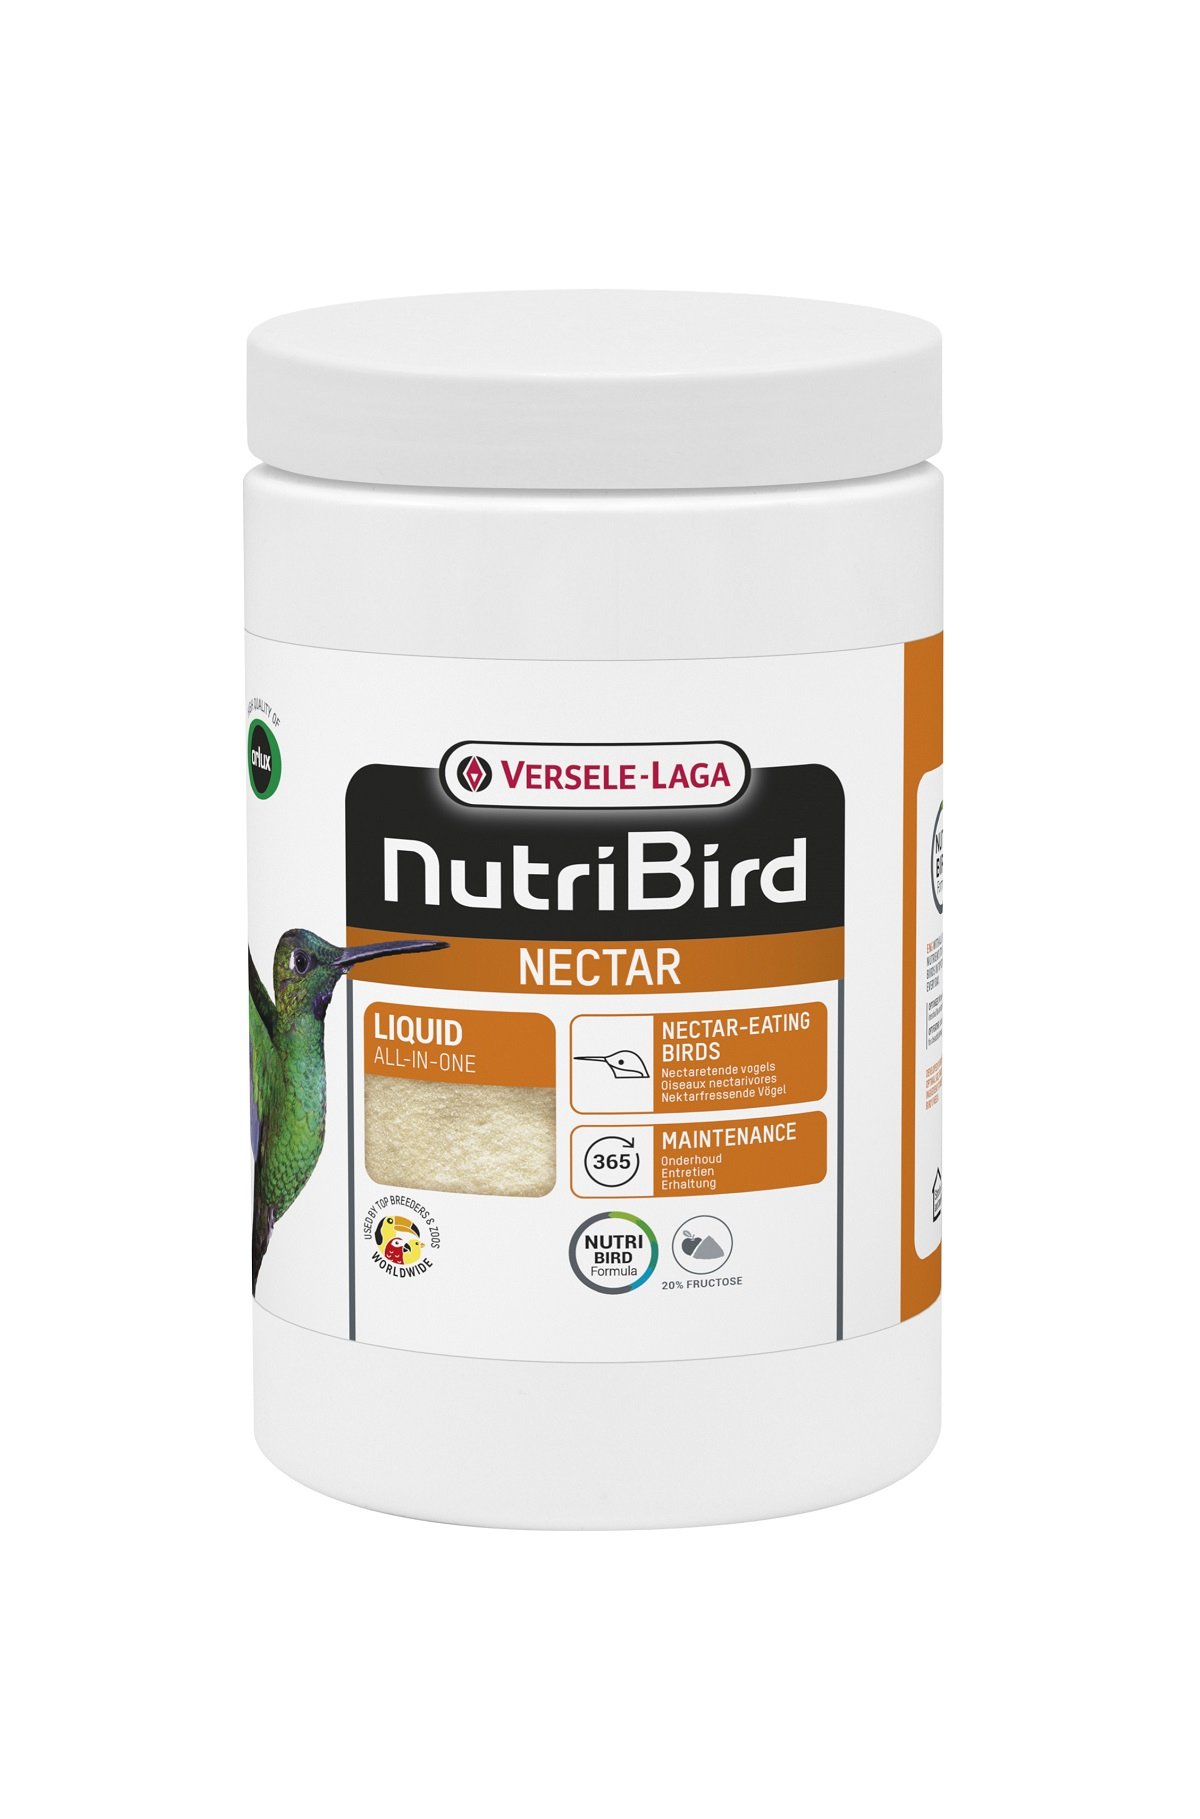 Nutribird Nectar Alimento completo para nectarívoros y colibrís